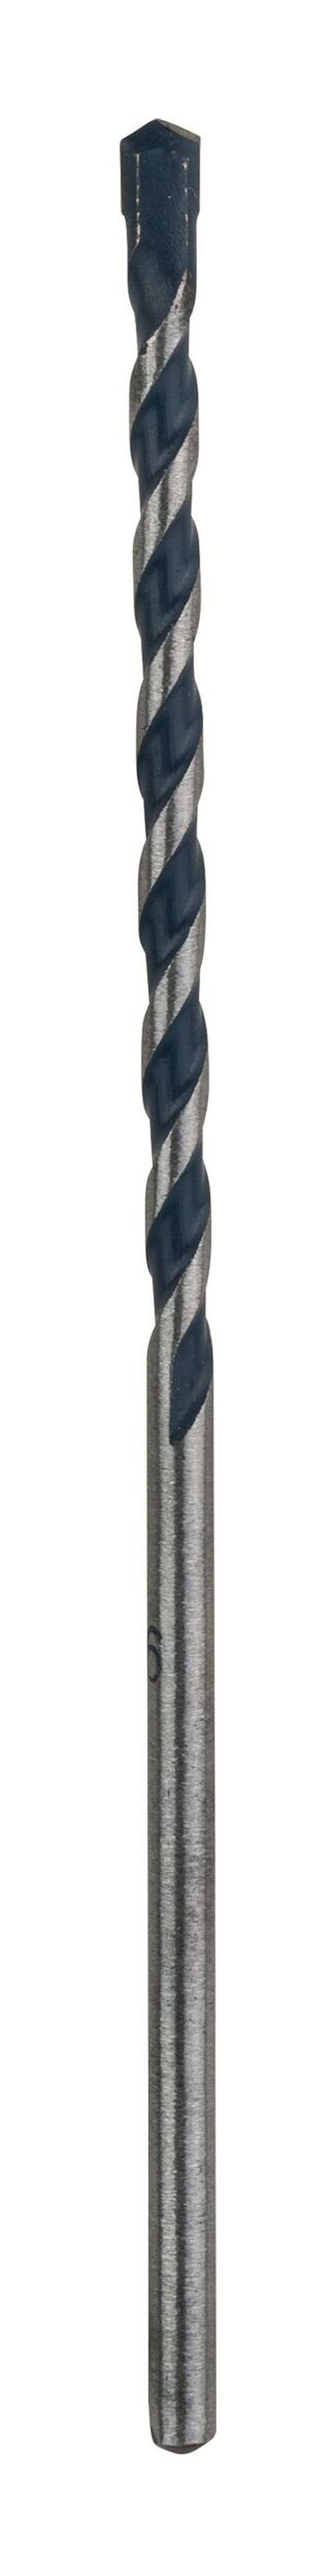 BOSCH Steinbohrer, CYL-5 (Blue Granite) Betonbohrer - 3 x 50 x 90 mm - 1er-Pack